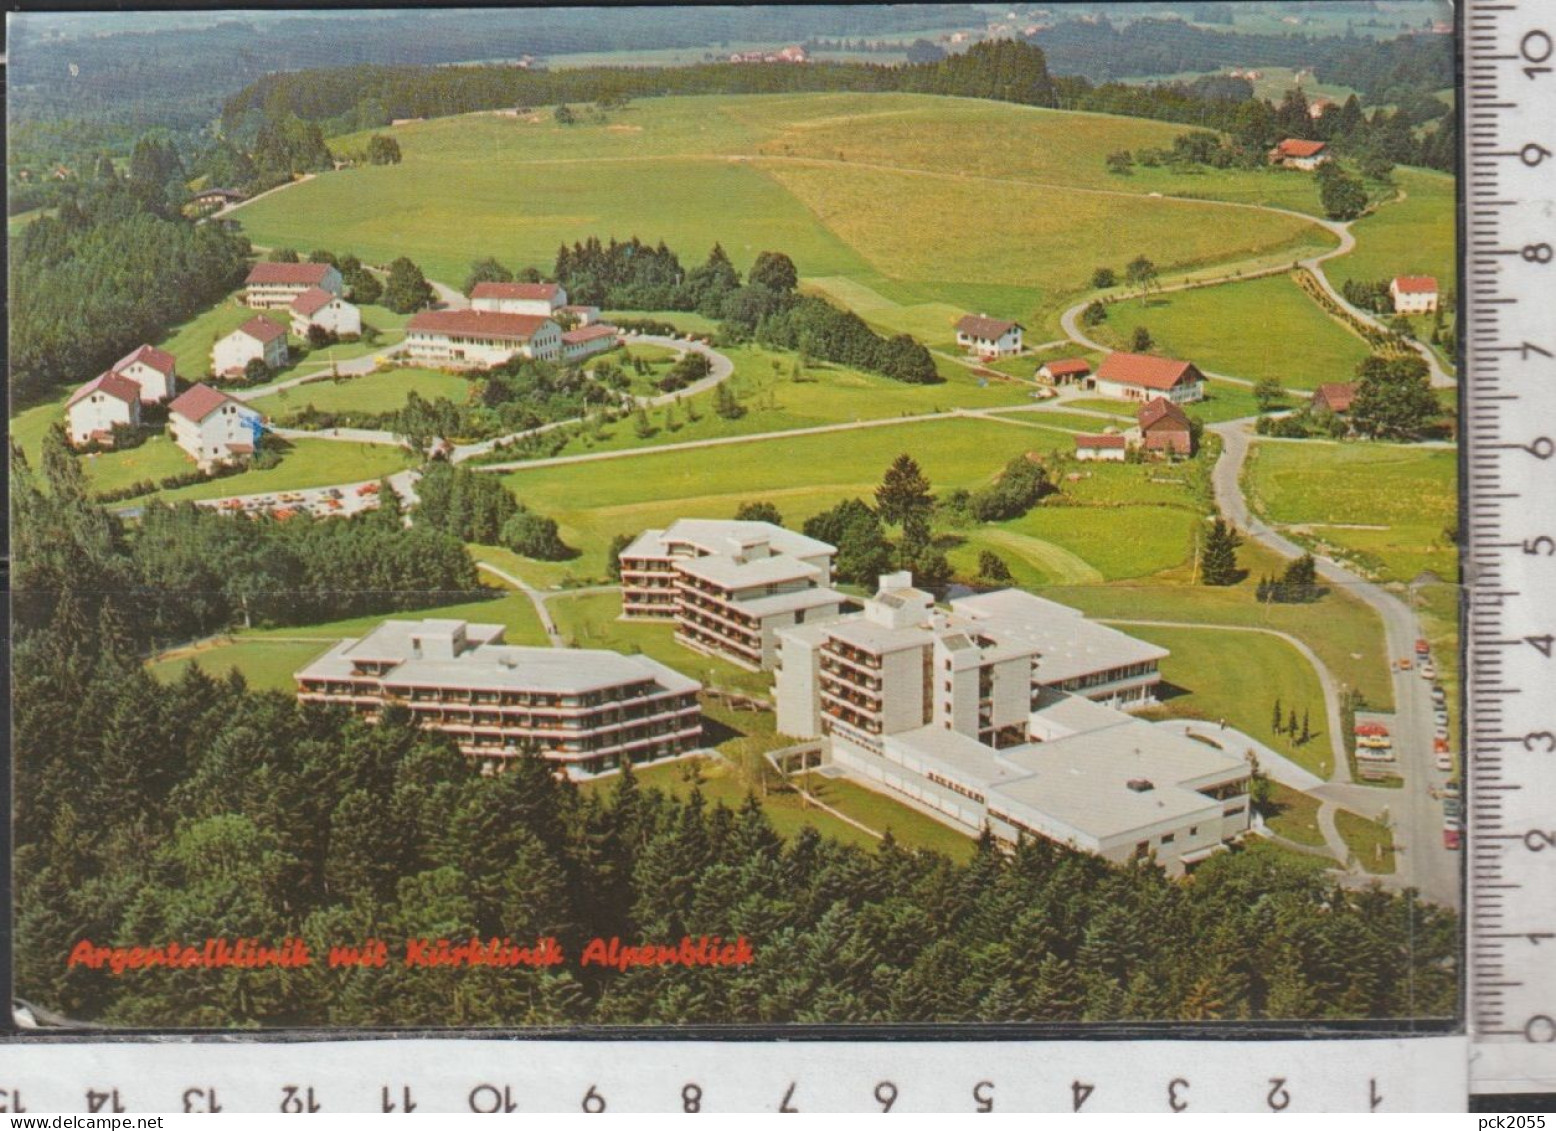 ISNY Im Allgäu - Neutrauchburg - Argentalklinik ,  Gelaufen  ( AK 4831) Günstige Versandkosten - Isny